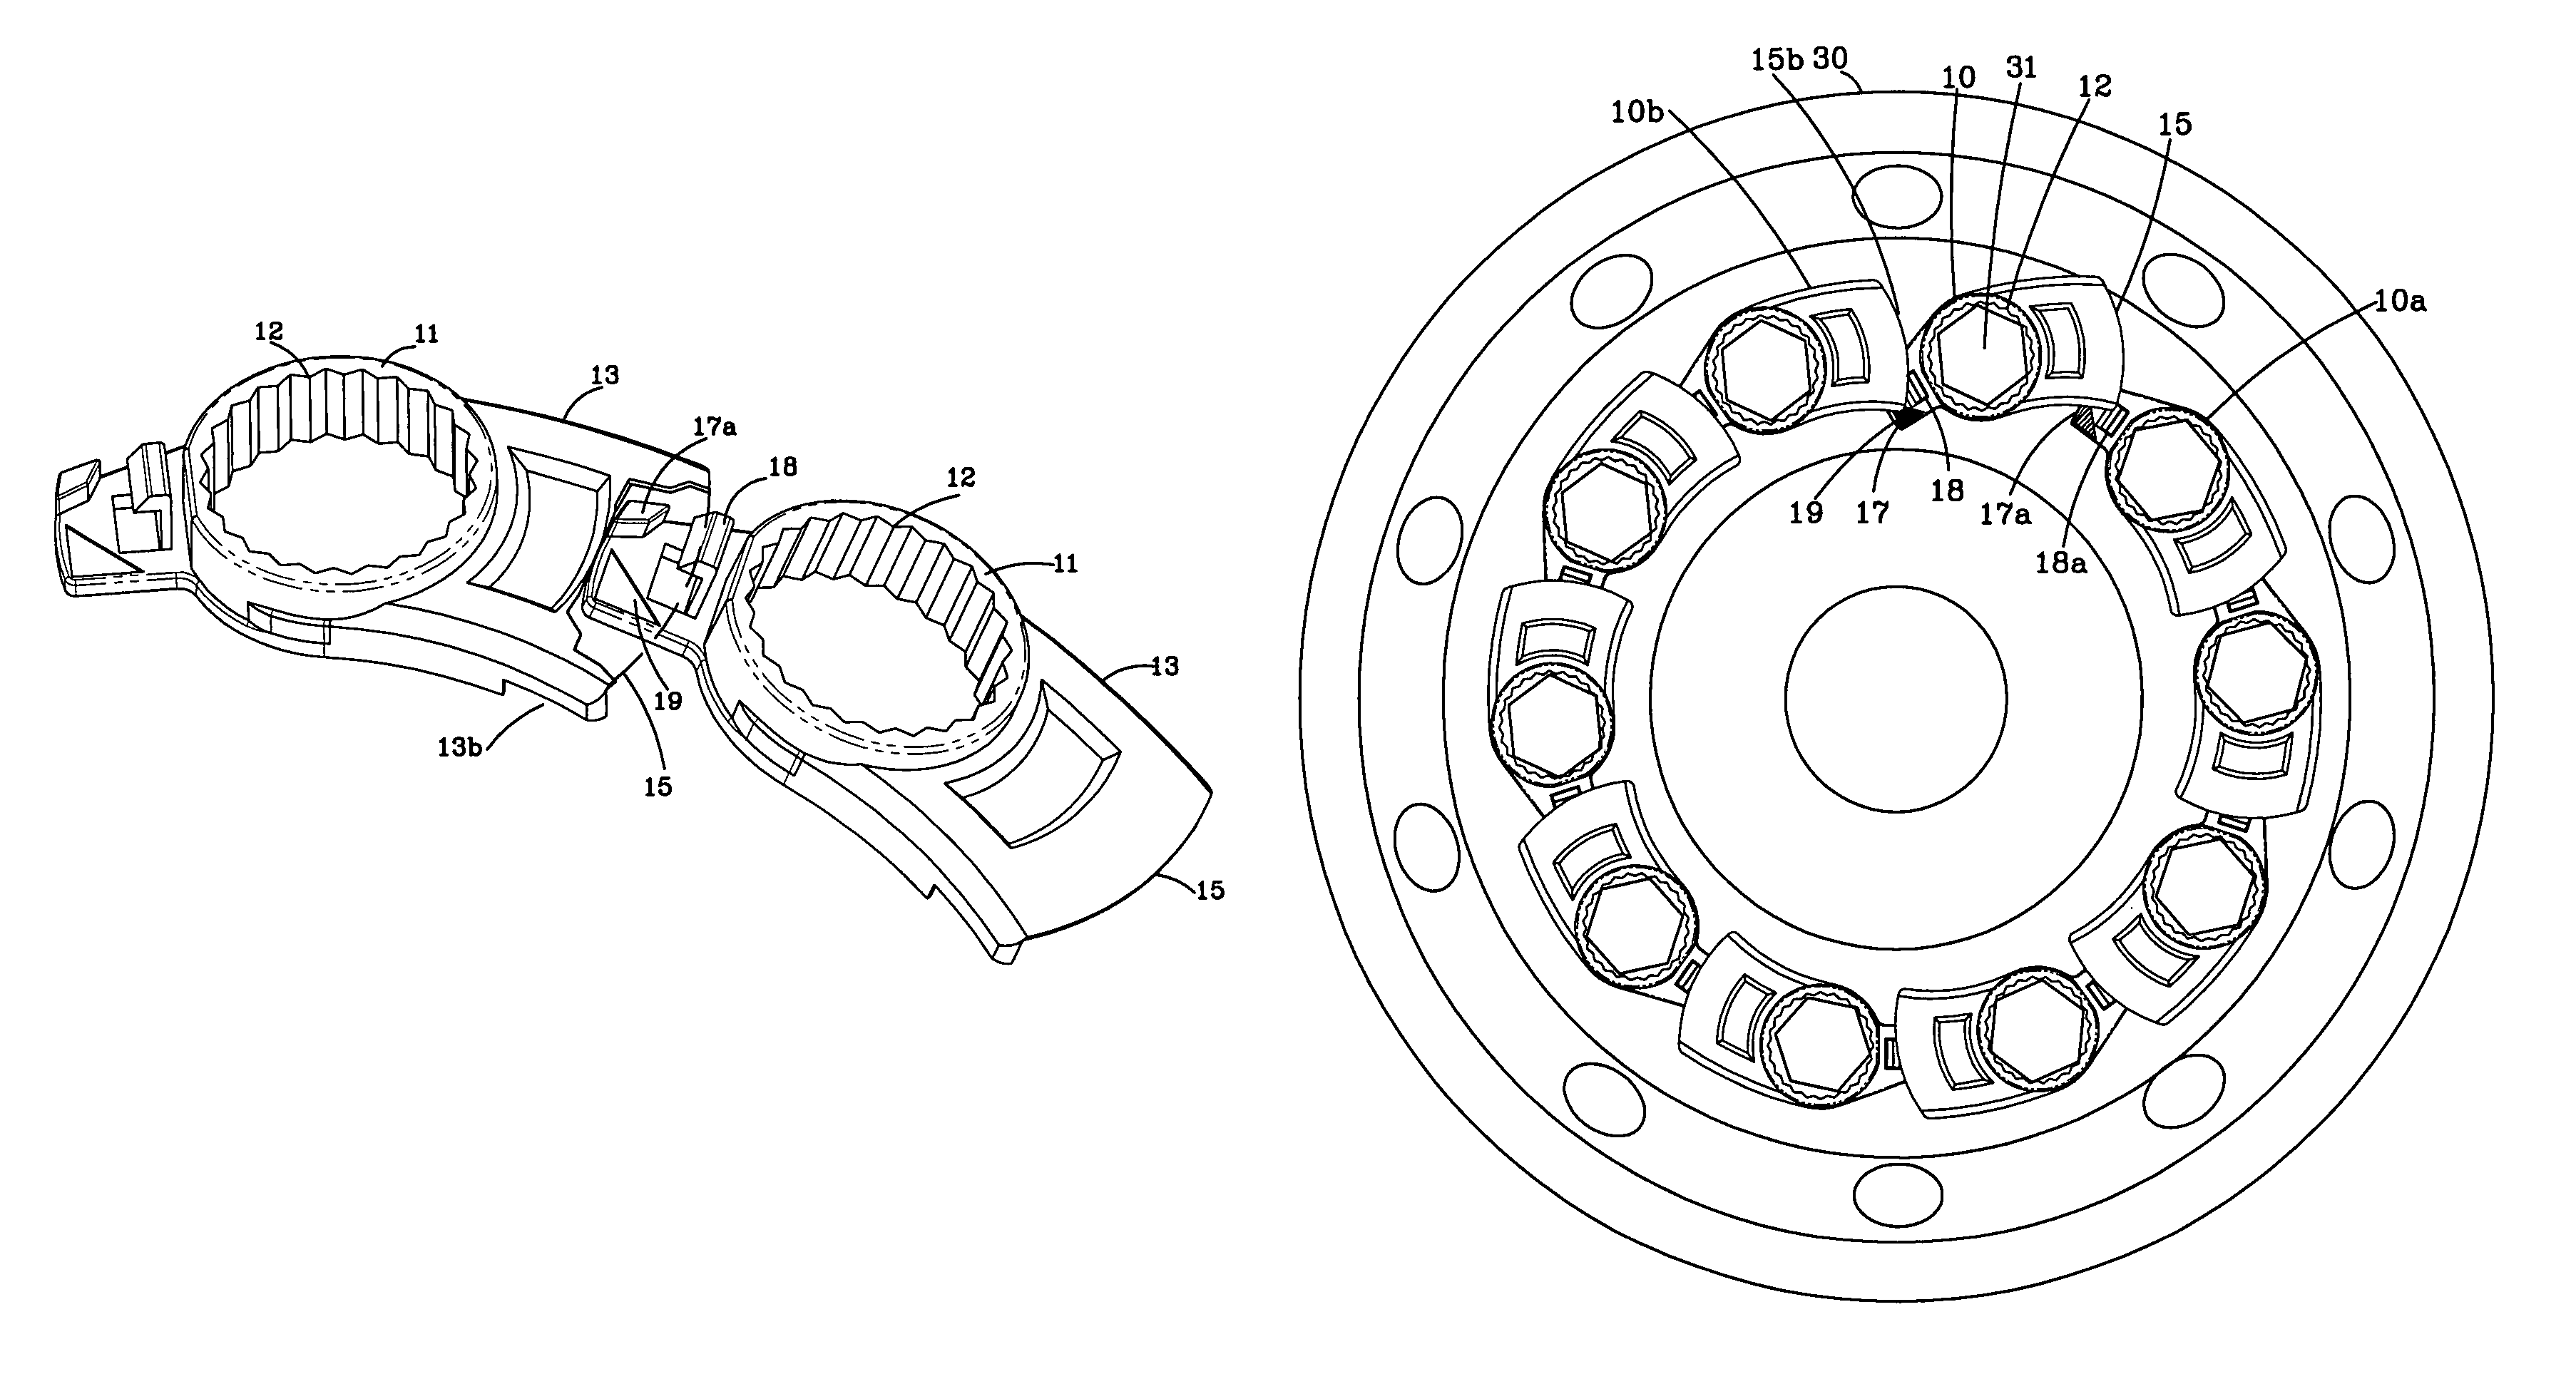 Wheel lug nut management device